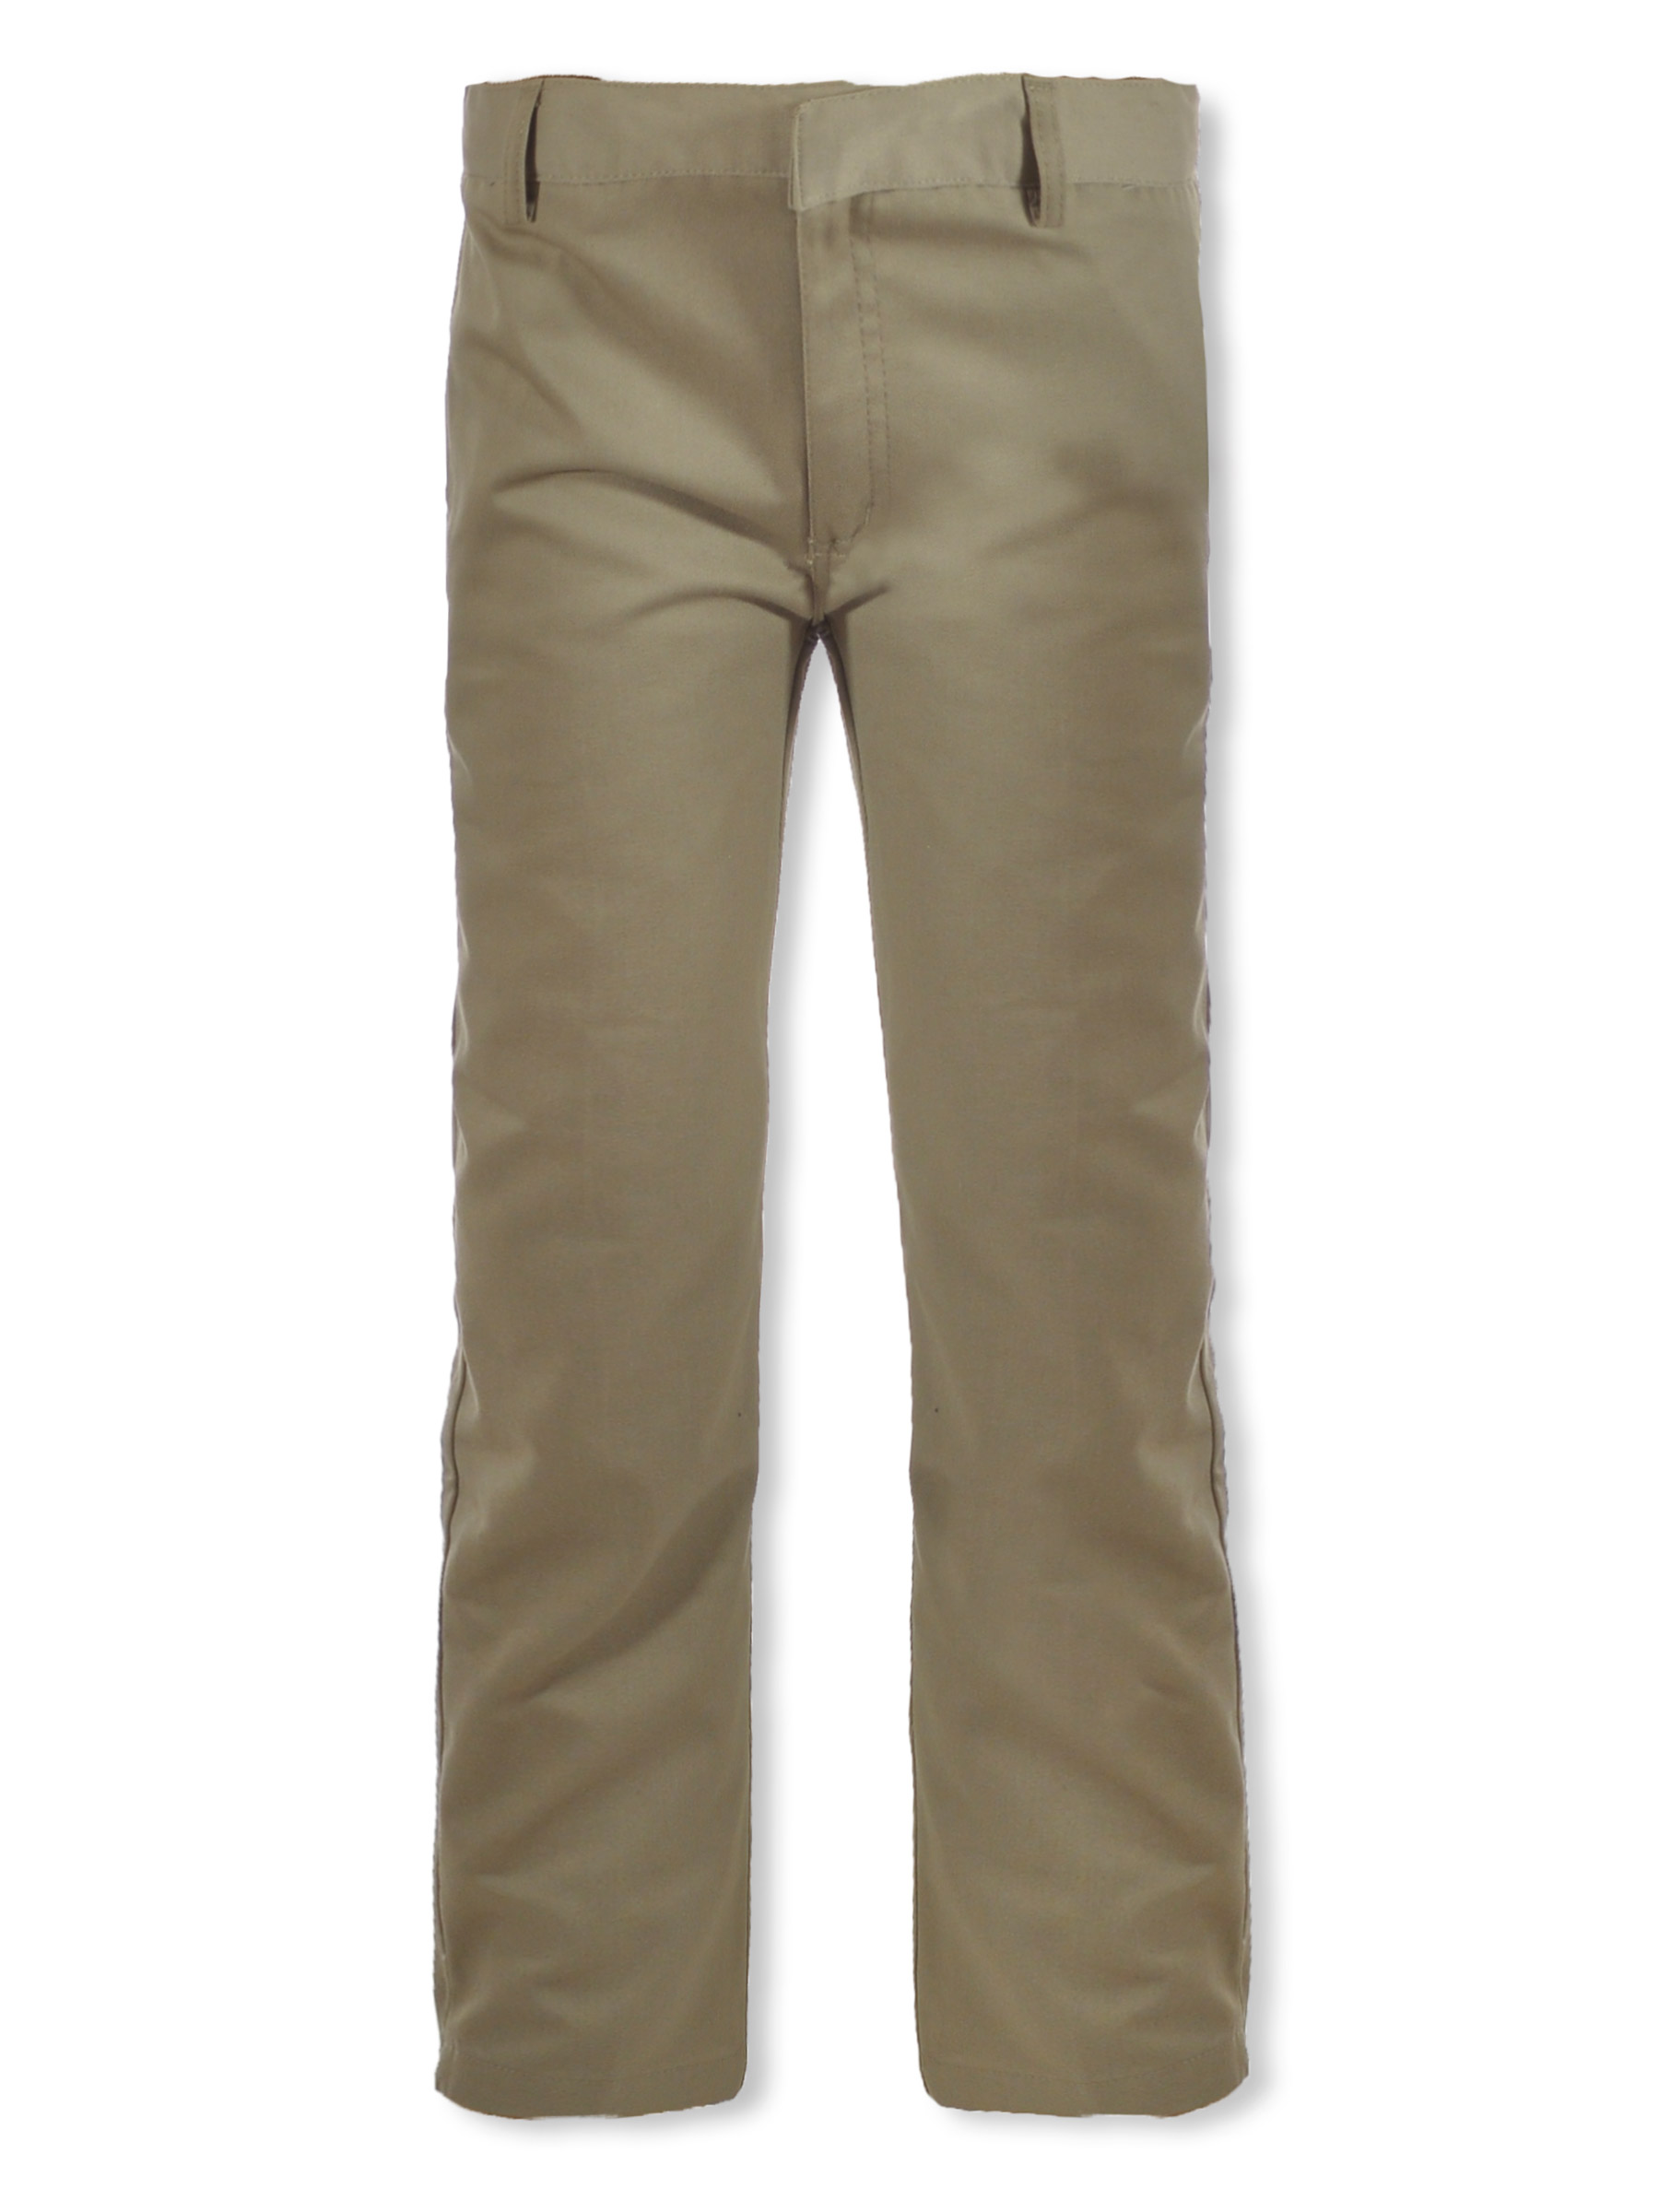 Wholesale Boys' Flat Front Uniform Pants, Khaki, Size 20 - DollarDays